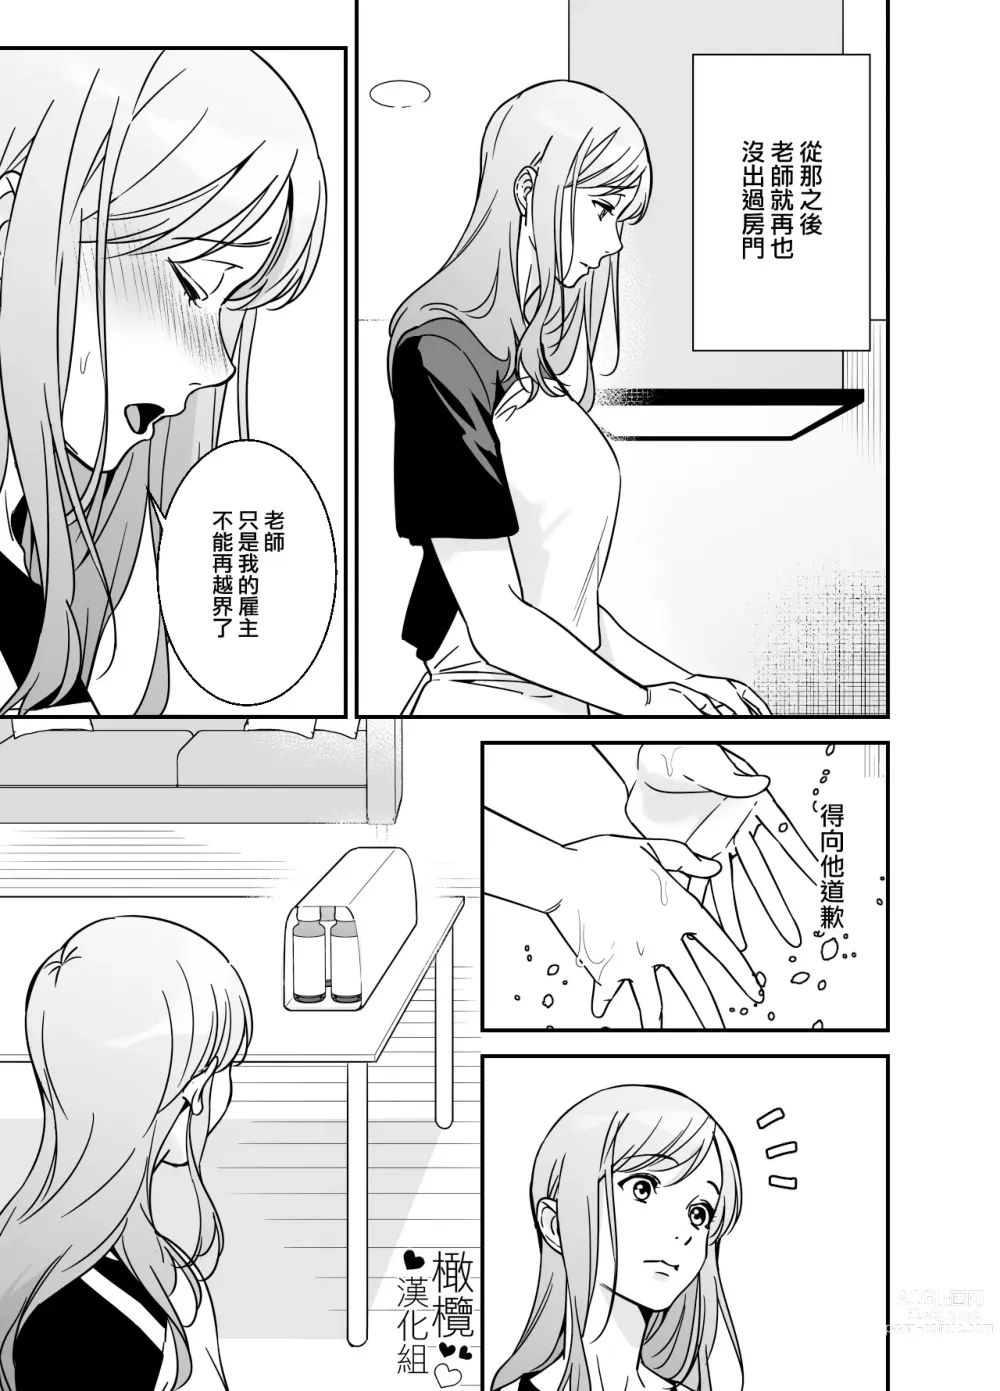 Page 28 of doujinshi 处男小说家和家政妇小姐